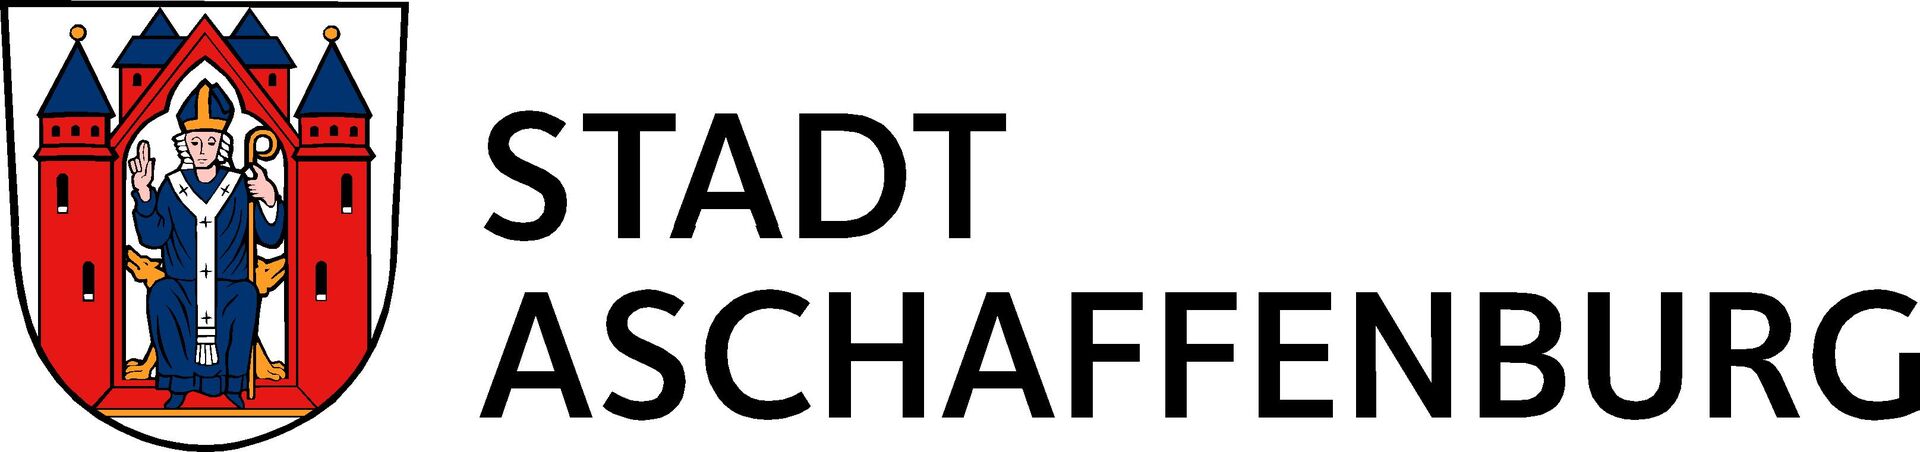 Stadt AB Logo4c